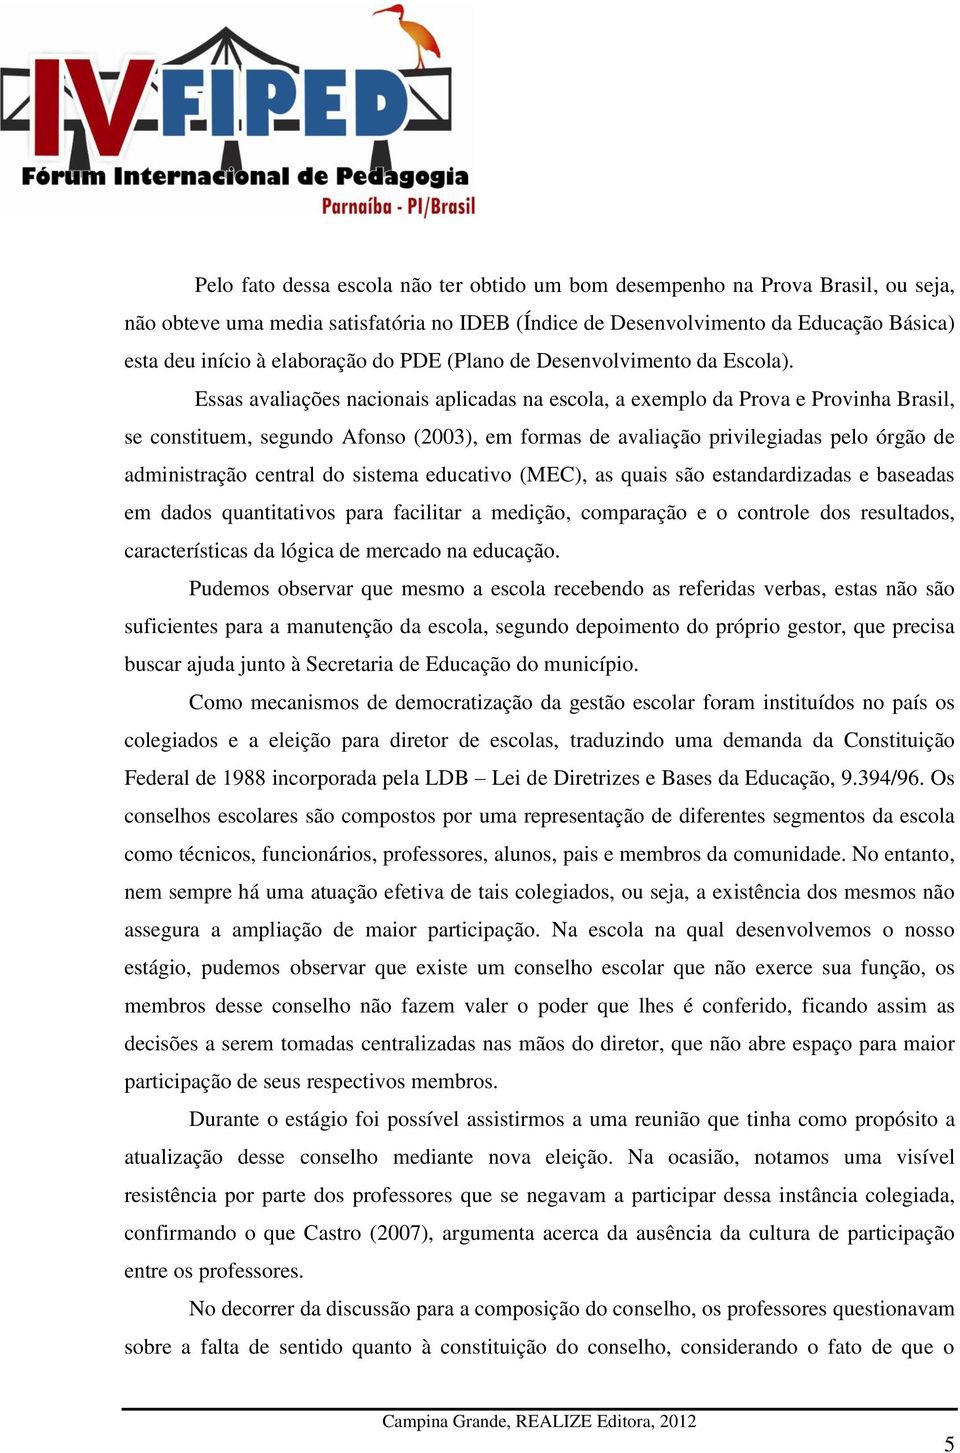 Essas avaliações nacionais aplicadas na escola, a exemplo da Prova e Provinha Brasil, se constituem, segundo Afonso (2003), em formas de avaliação privilegiadas pelo órgão de administração central do